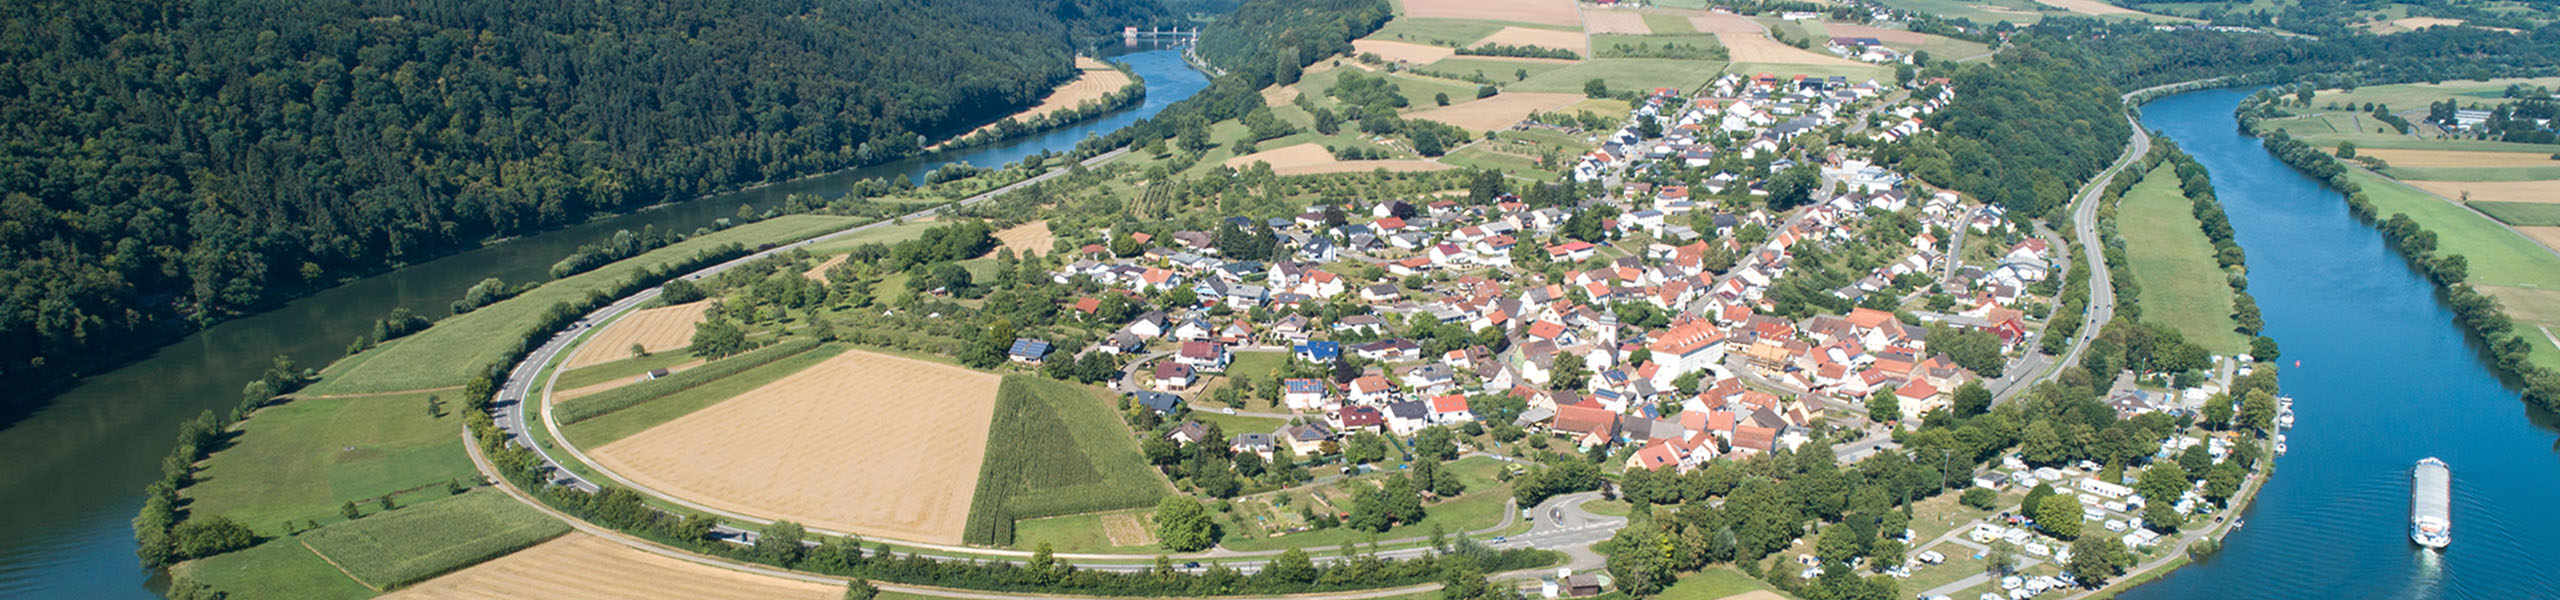 50 Jahre Neckar-Odenwald-Kreis - Datenschutz